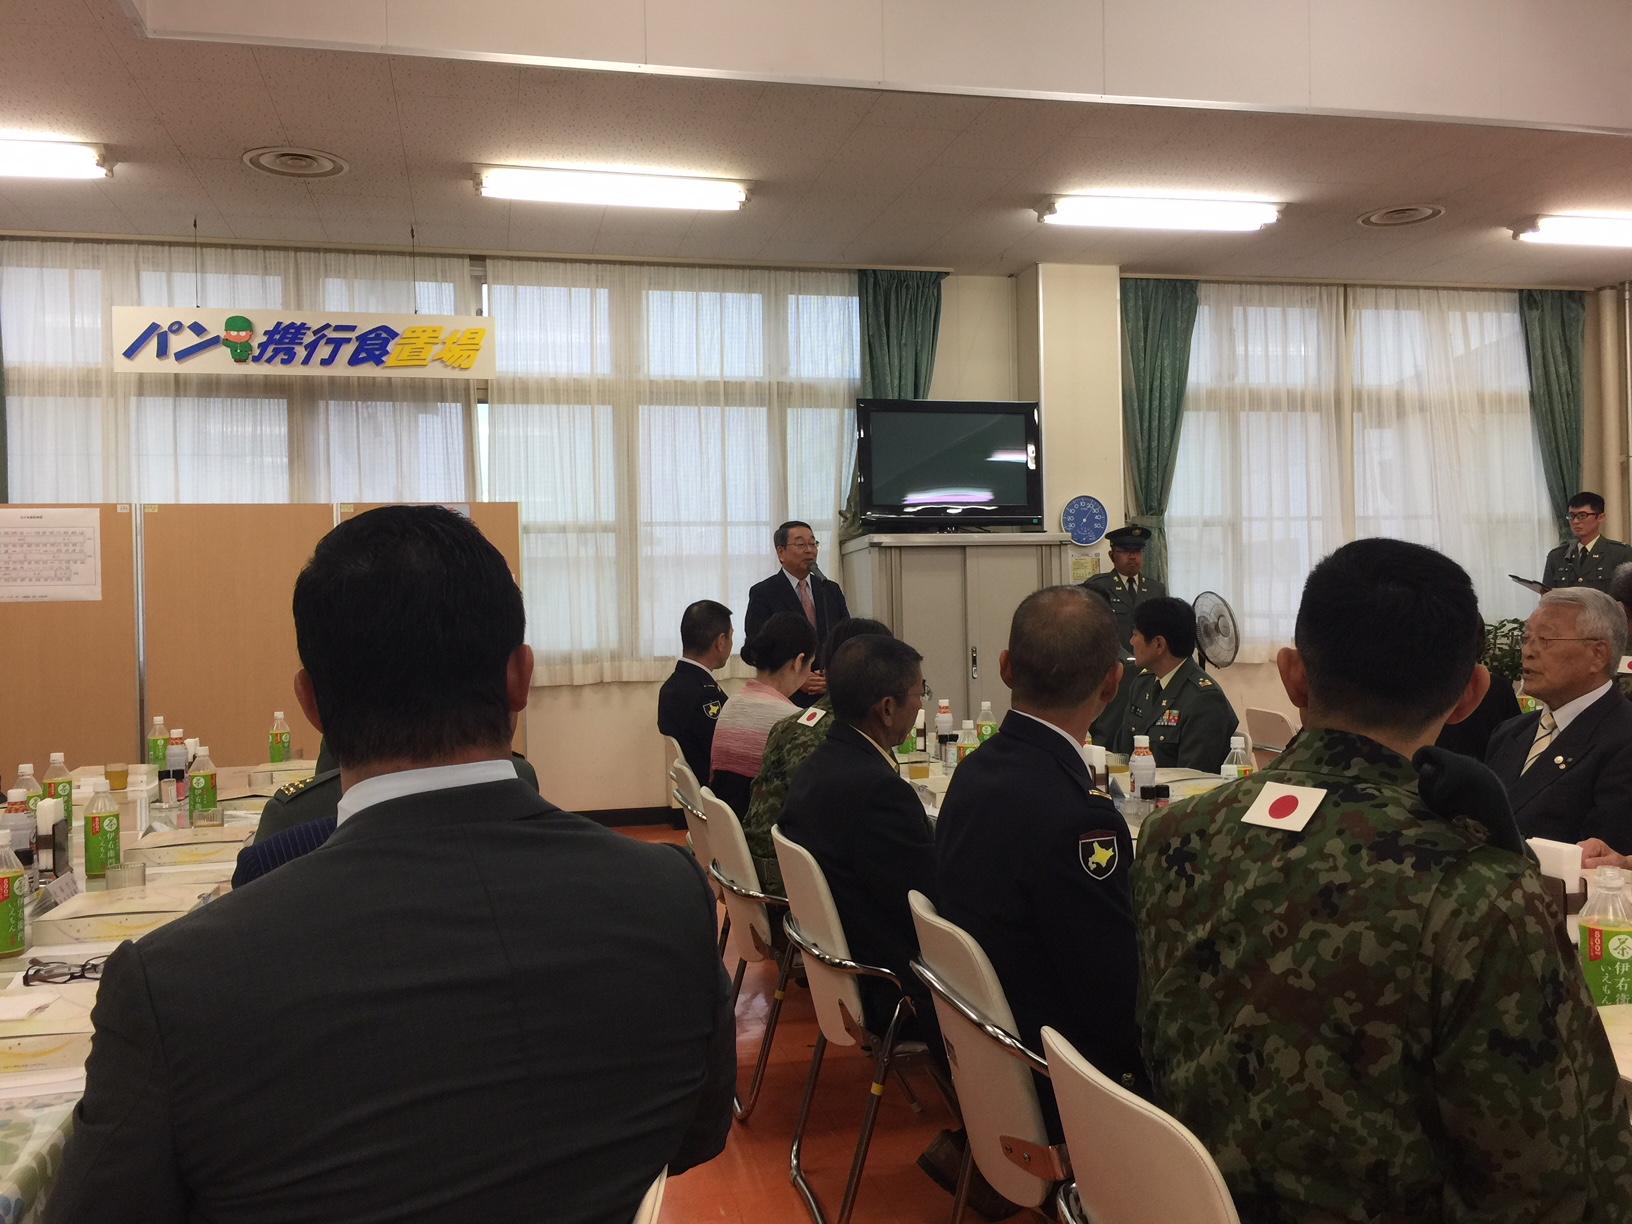 会場で挨拶をする原田市長と自衛官の方々の写真